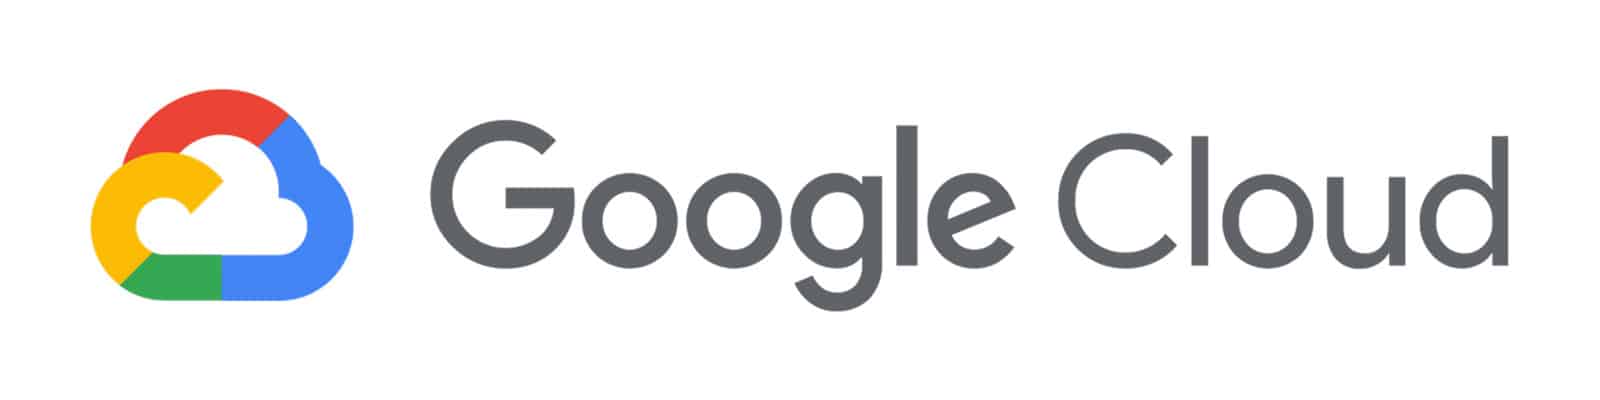 Google Cloud Migration Tools